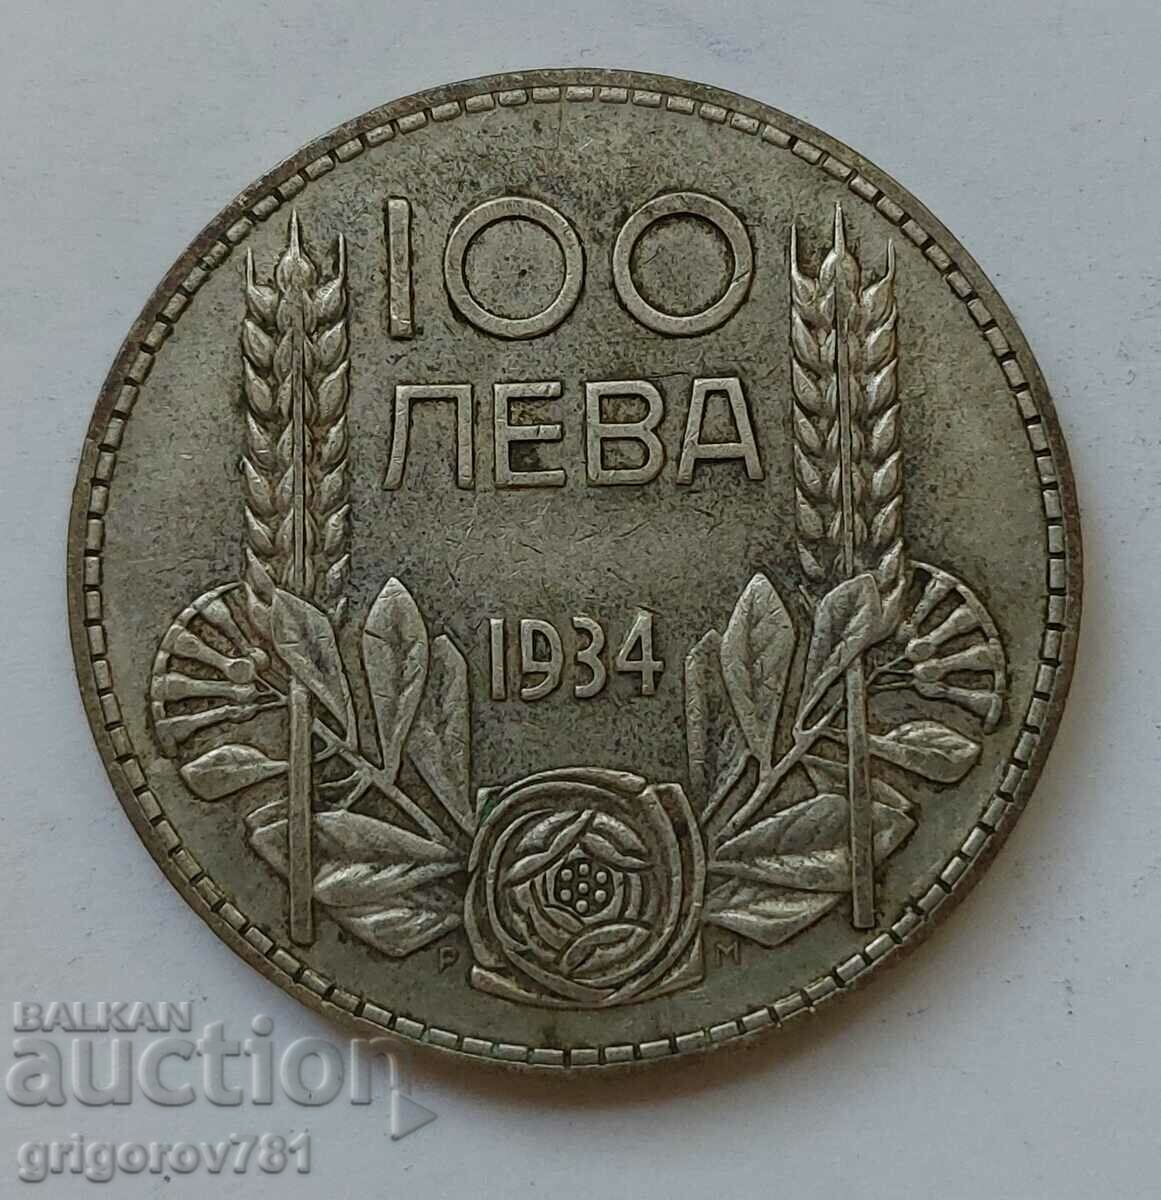 Ασήμι 100 λέβα Βουλγαρία 1934 - ασημένιο νόμισμα #10